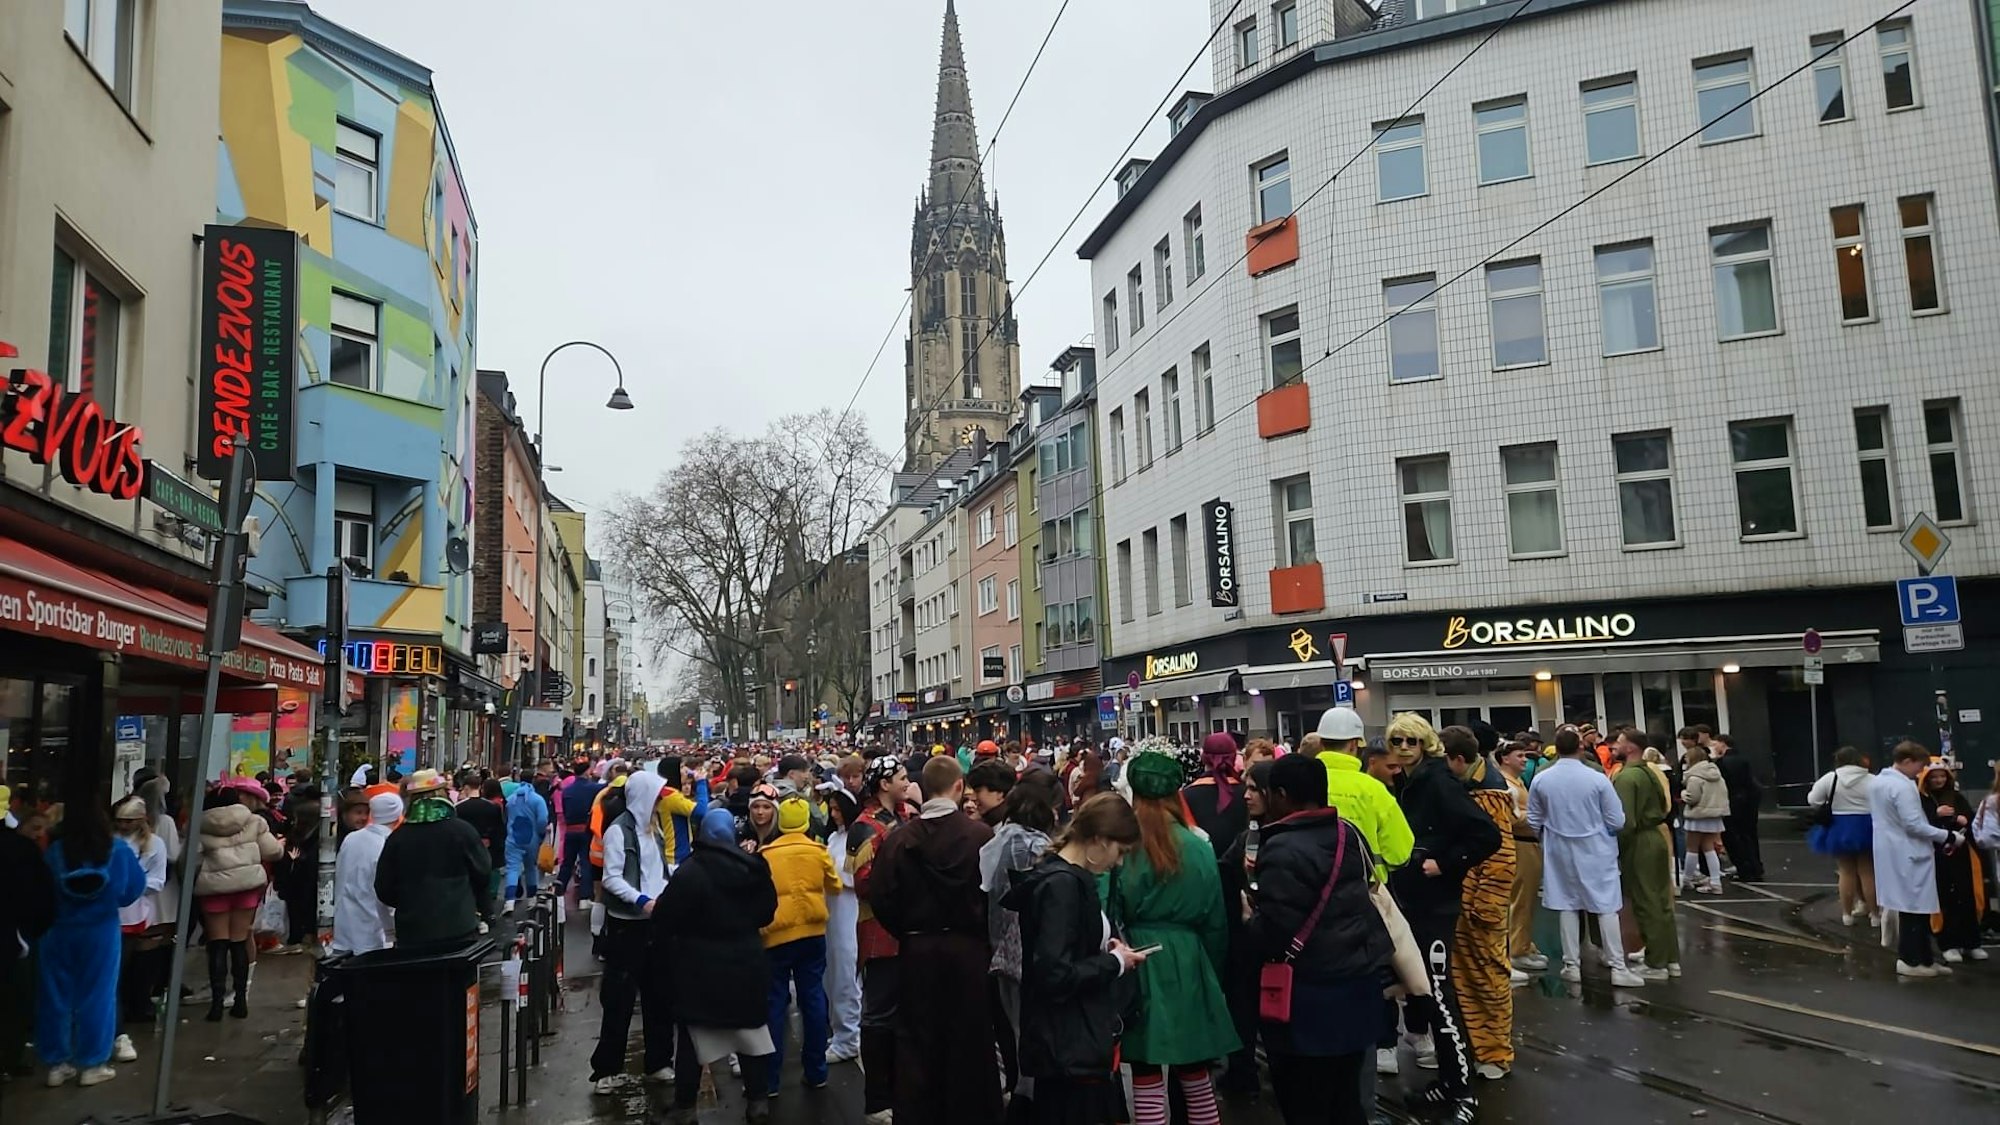 Viele Menschen auf der Zülpicher Straße in Köln, es wird voller.